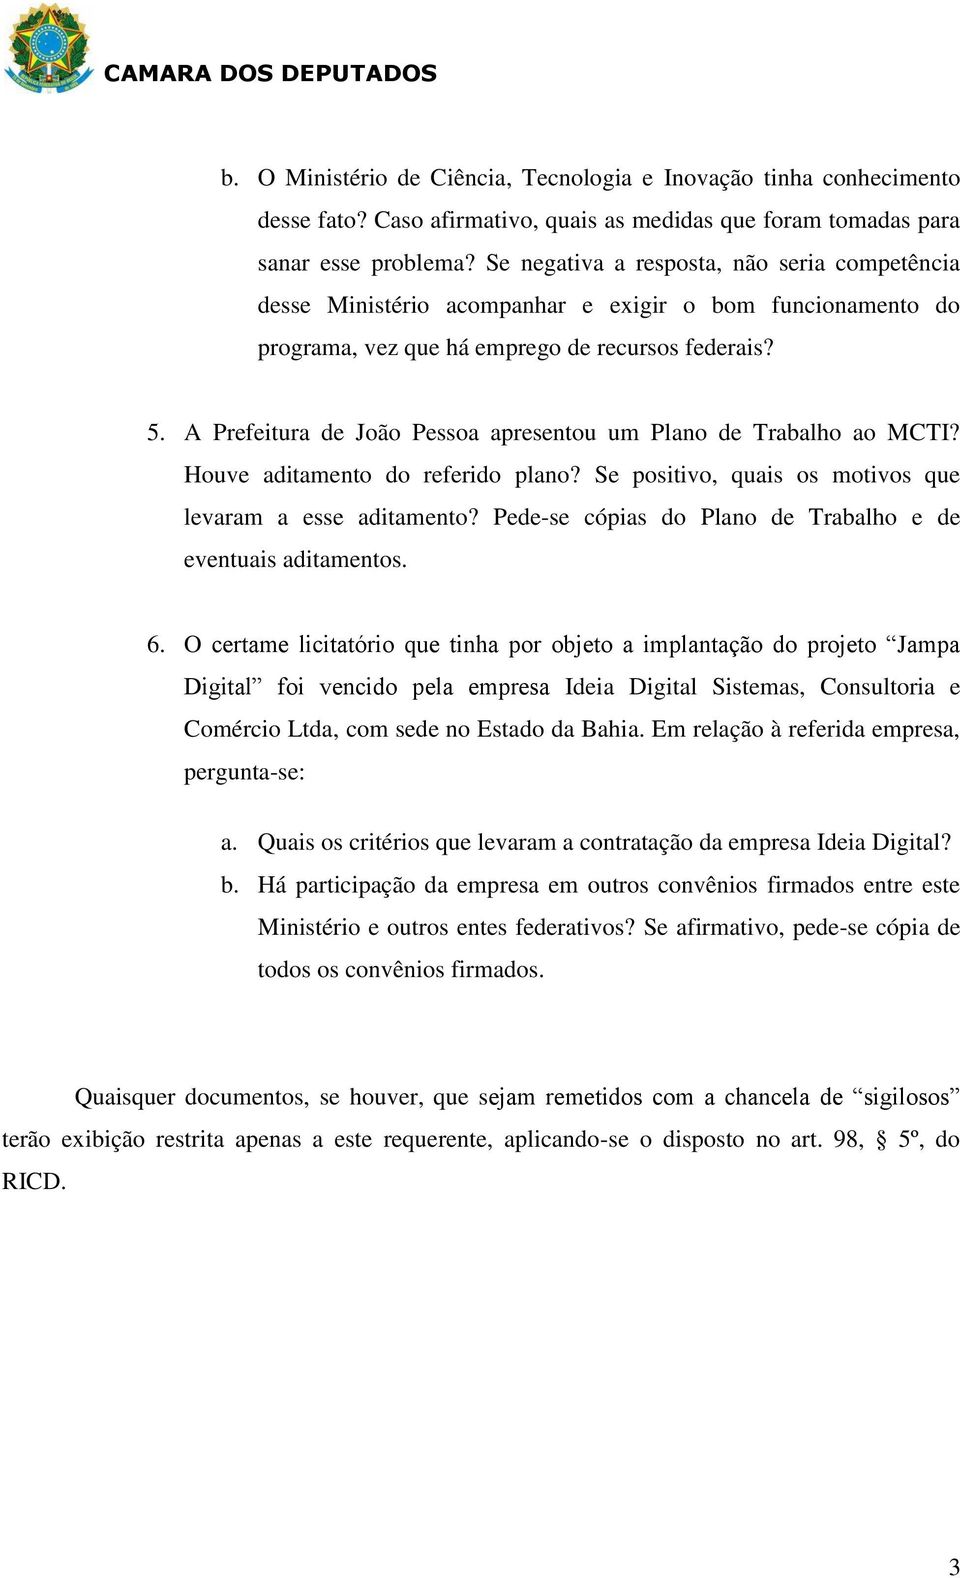 A Prefeitura de João Pessoa apresentou um Plano de Trabalho ao MCTI? Houve aditamento do referido plano? Se positivo, quais os motivos que levaram a esse aditamento?